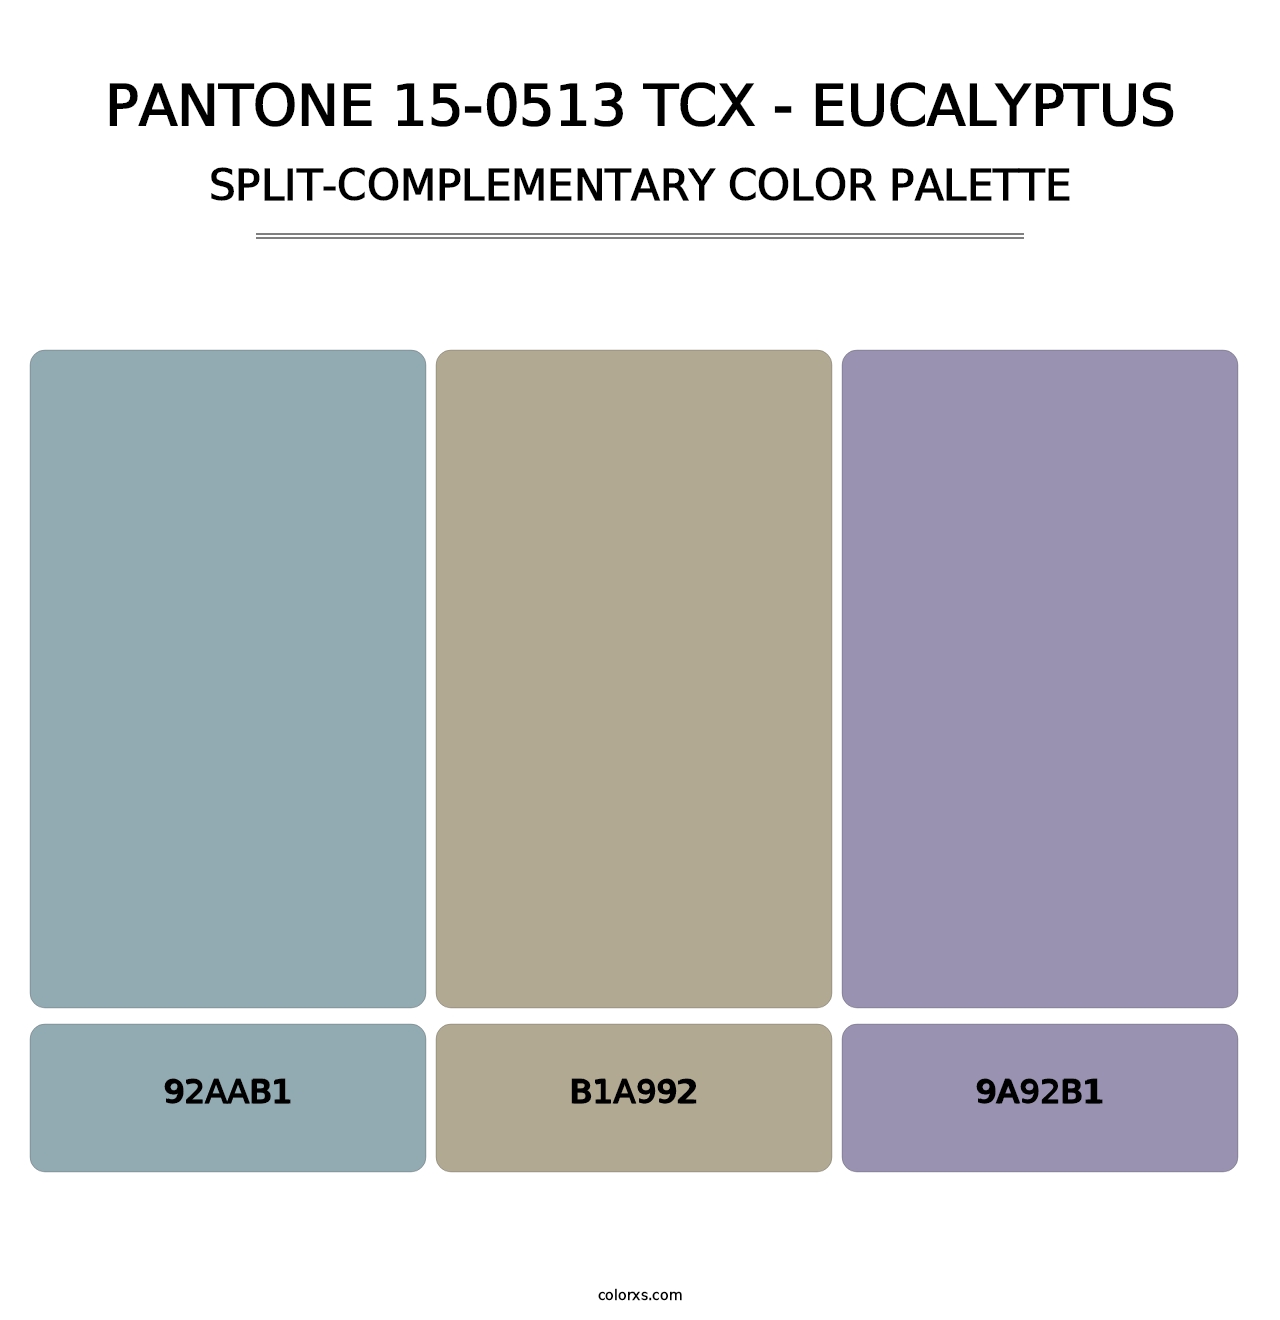 PANTONE 15-0513 TCX - Eucalyptus - Split-Complementary Color Palette